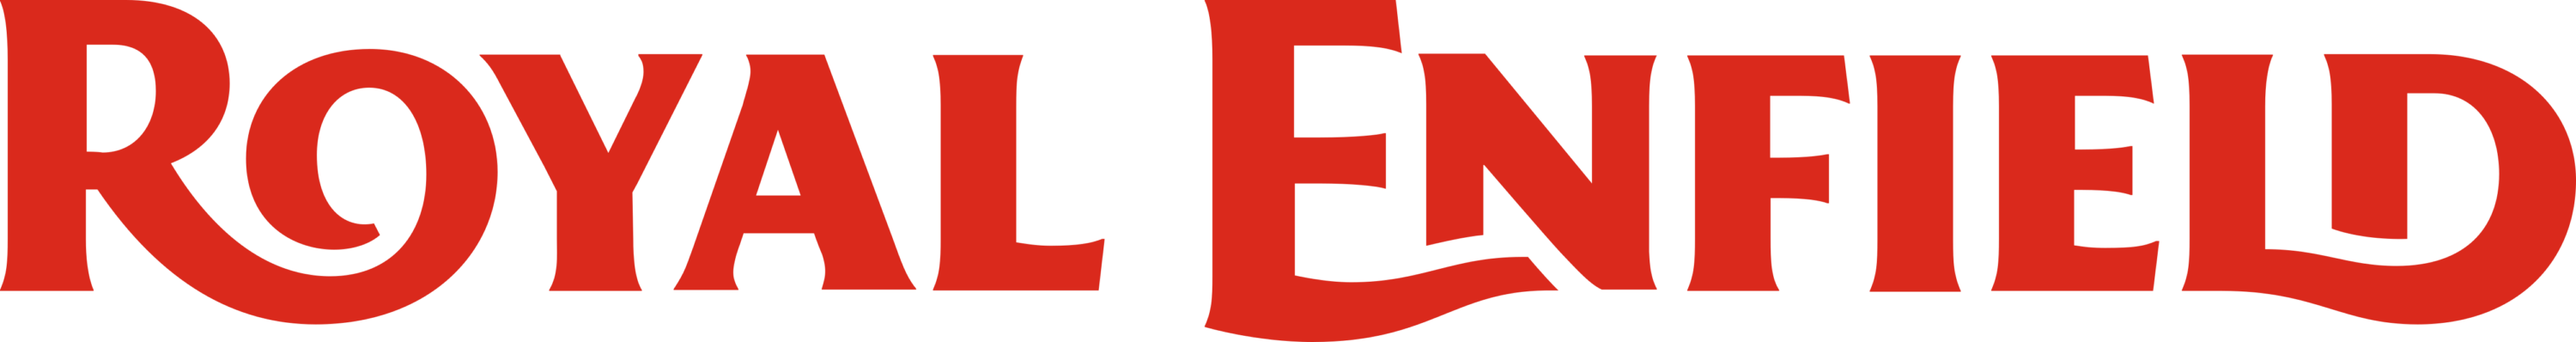 Royal Enfields Logo